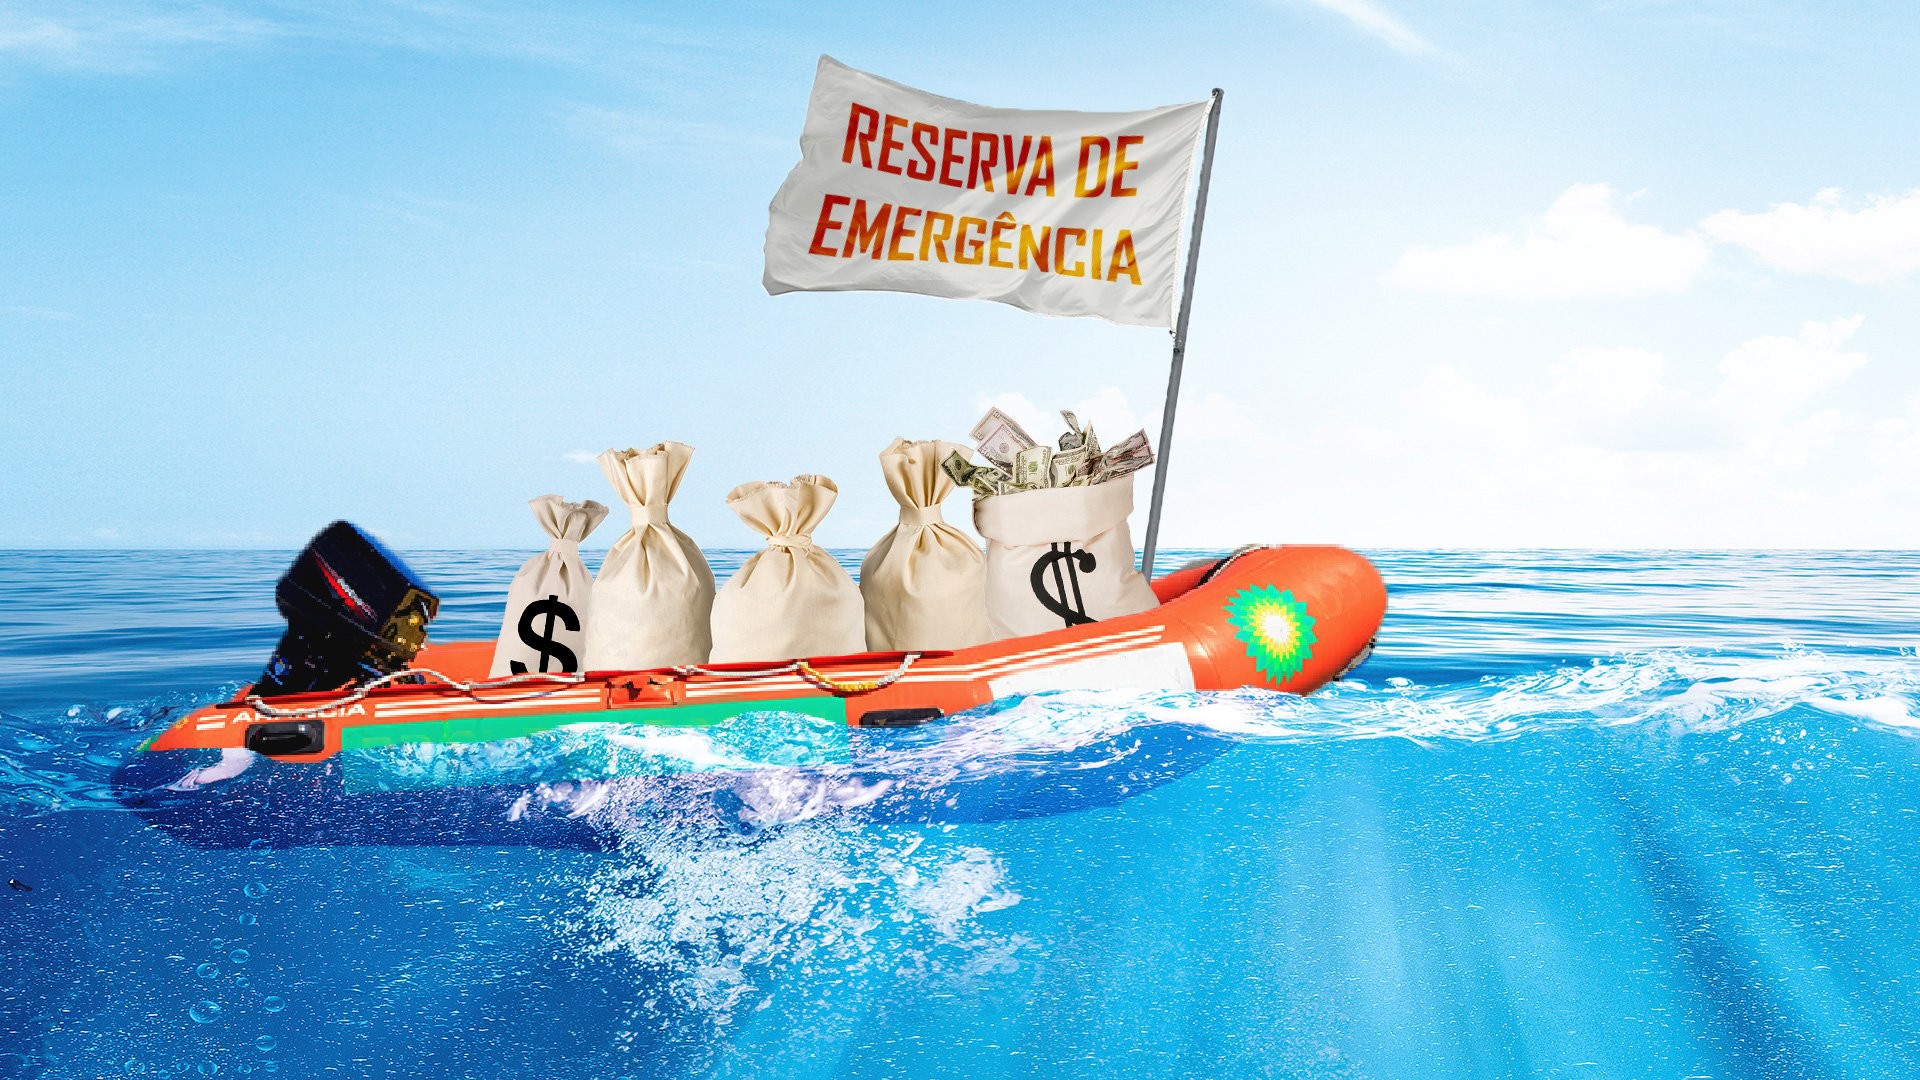 Bote com sacos de dinheiro representa reserva de emergência